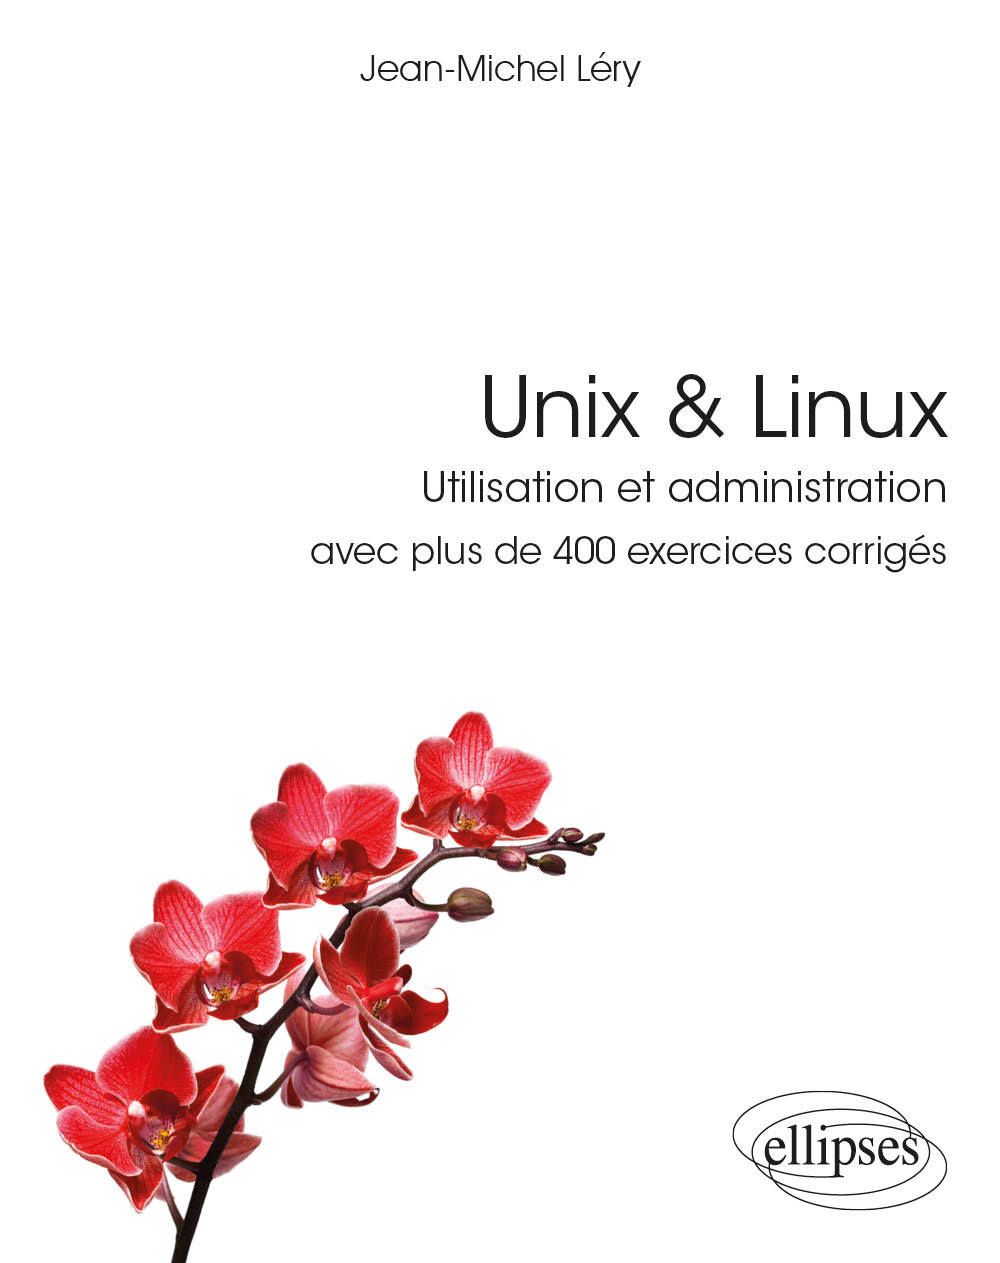 Carte Unix & Linux - Utilisation et administration - avec plus de 400 exercices corrigés Léry